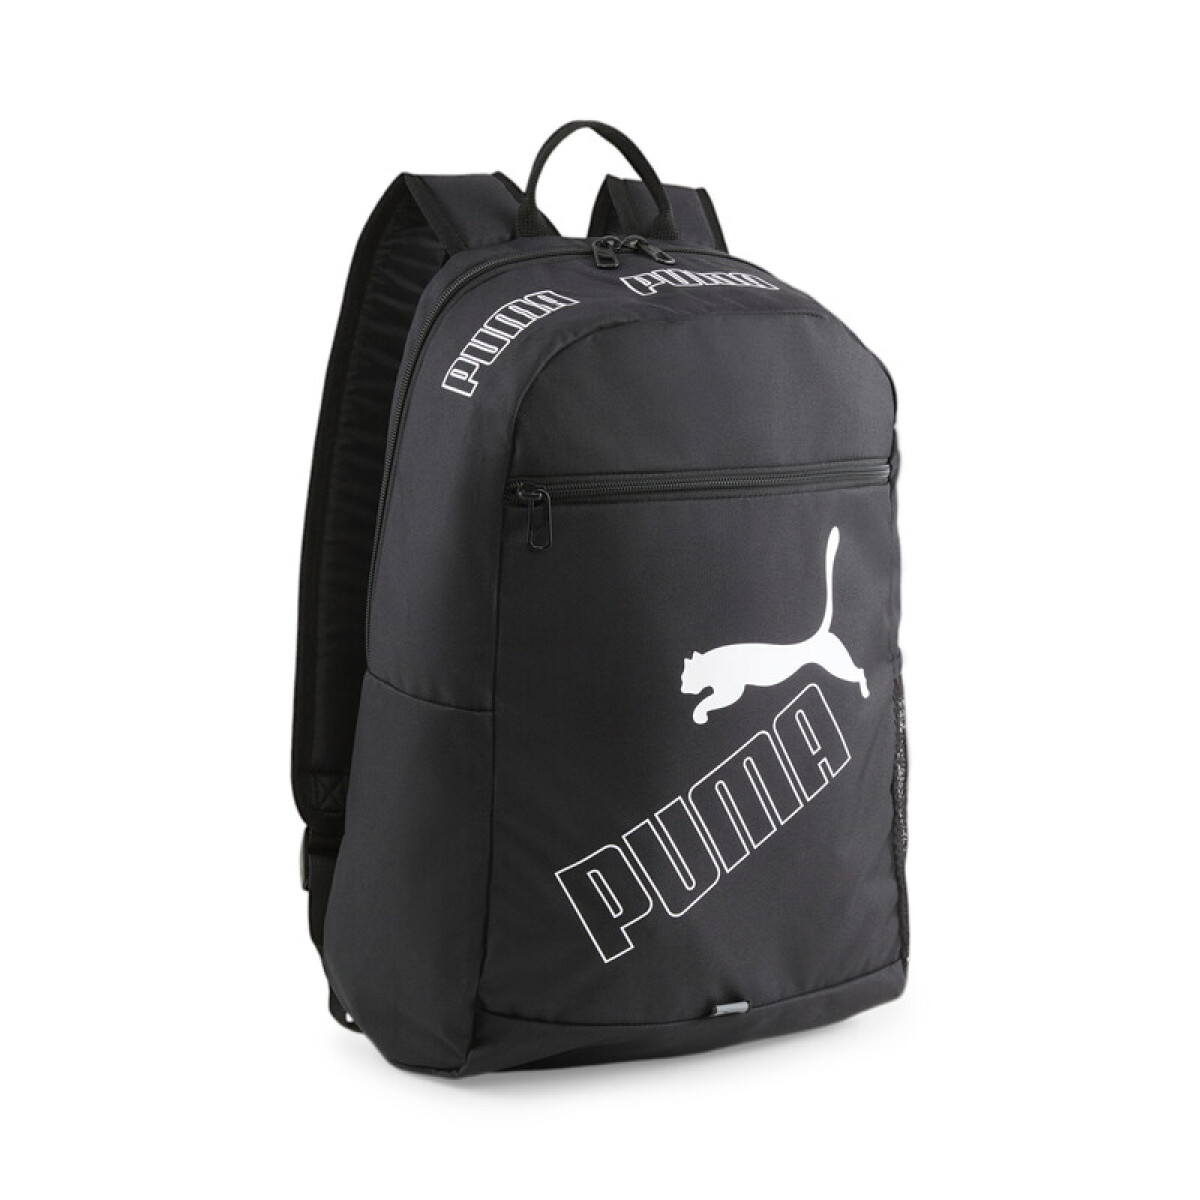 Phase II Backpack 07995201 - Negro 